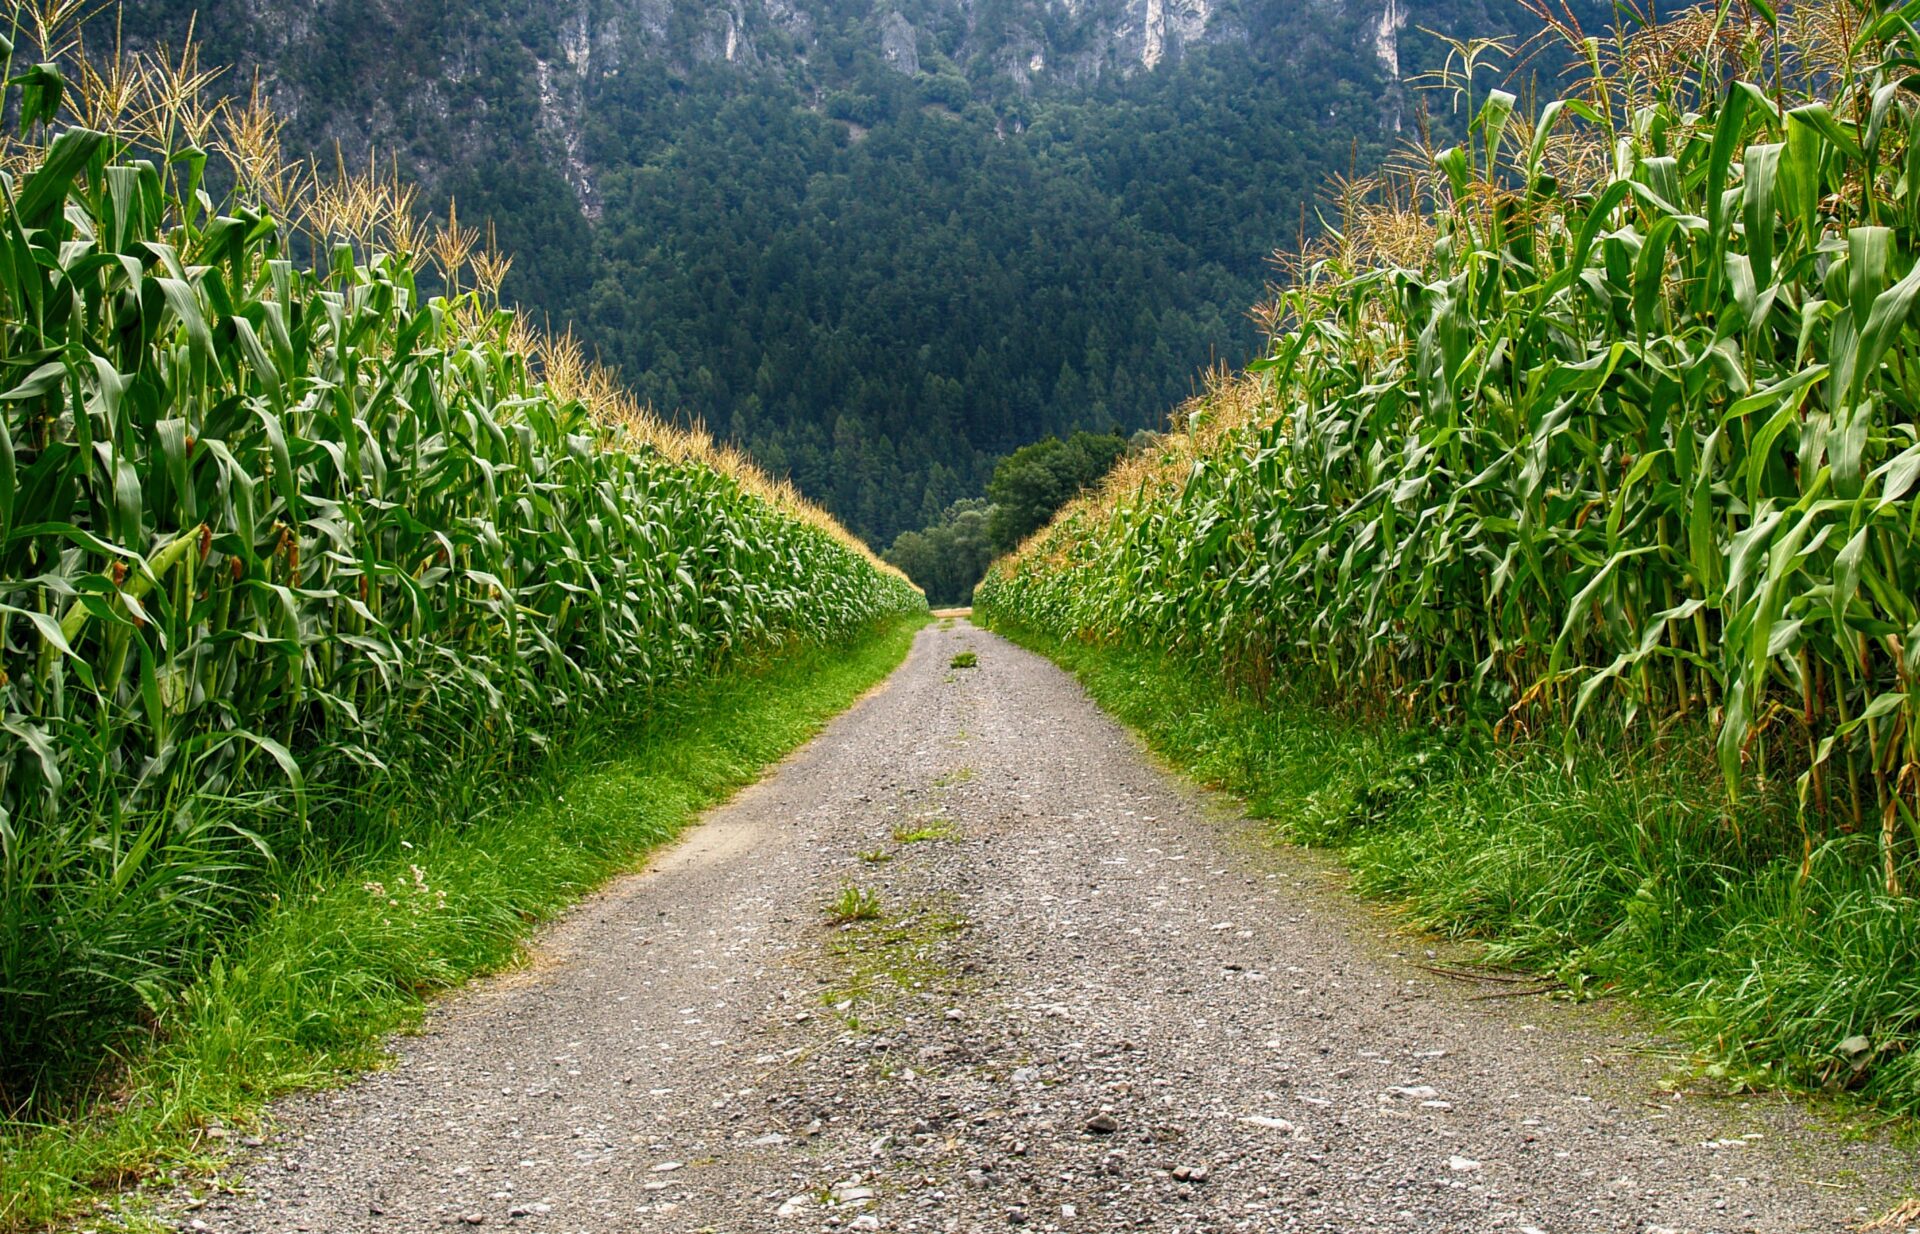 Cultura do milho: plantação de milho dividido ao meio por uma estrada.